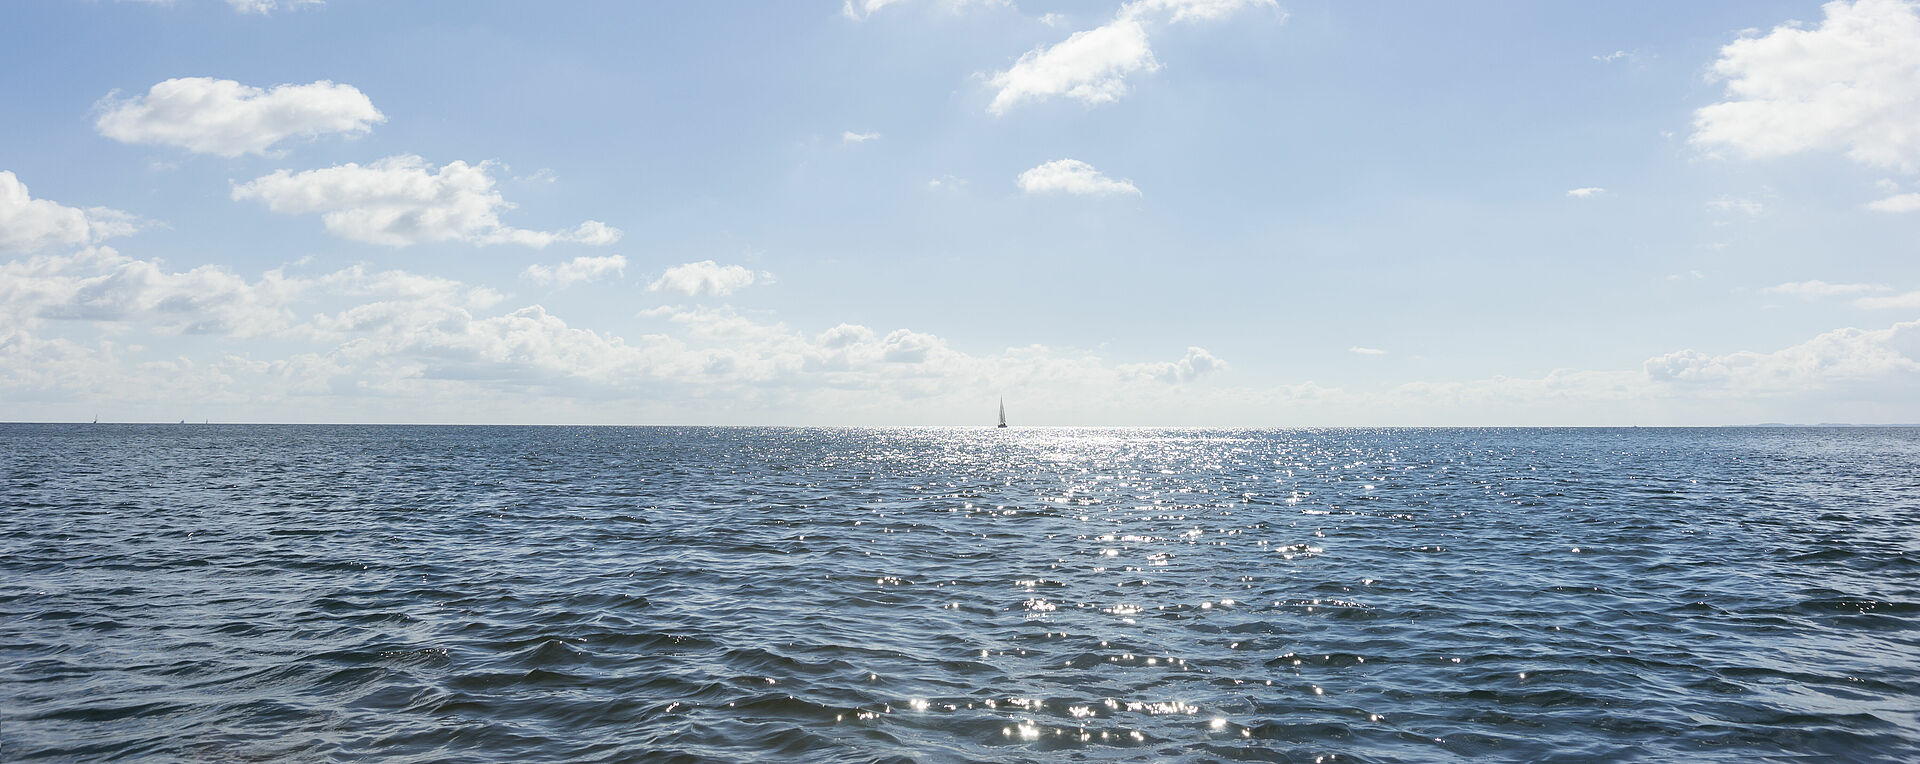 Die Sonne spiegelt sich im klaren Wasser der Ostsee am Horizont.